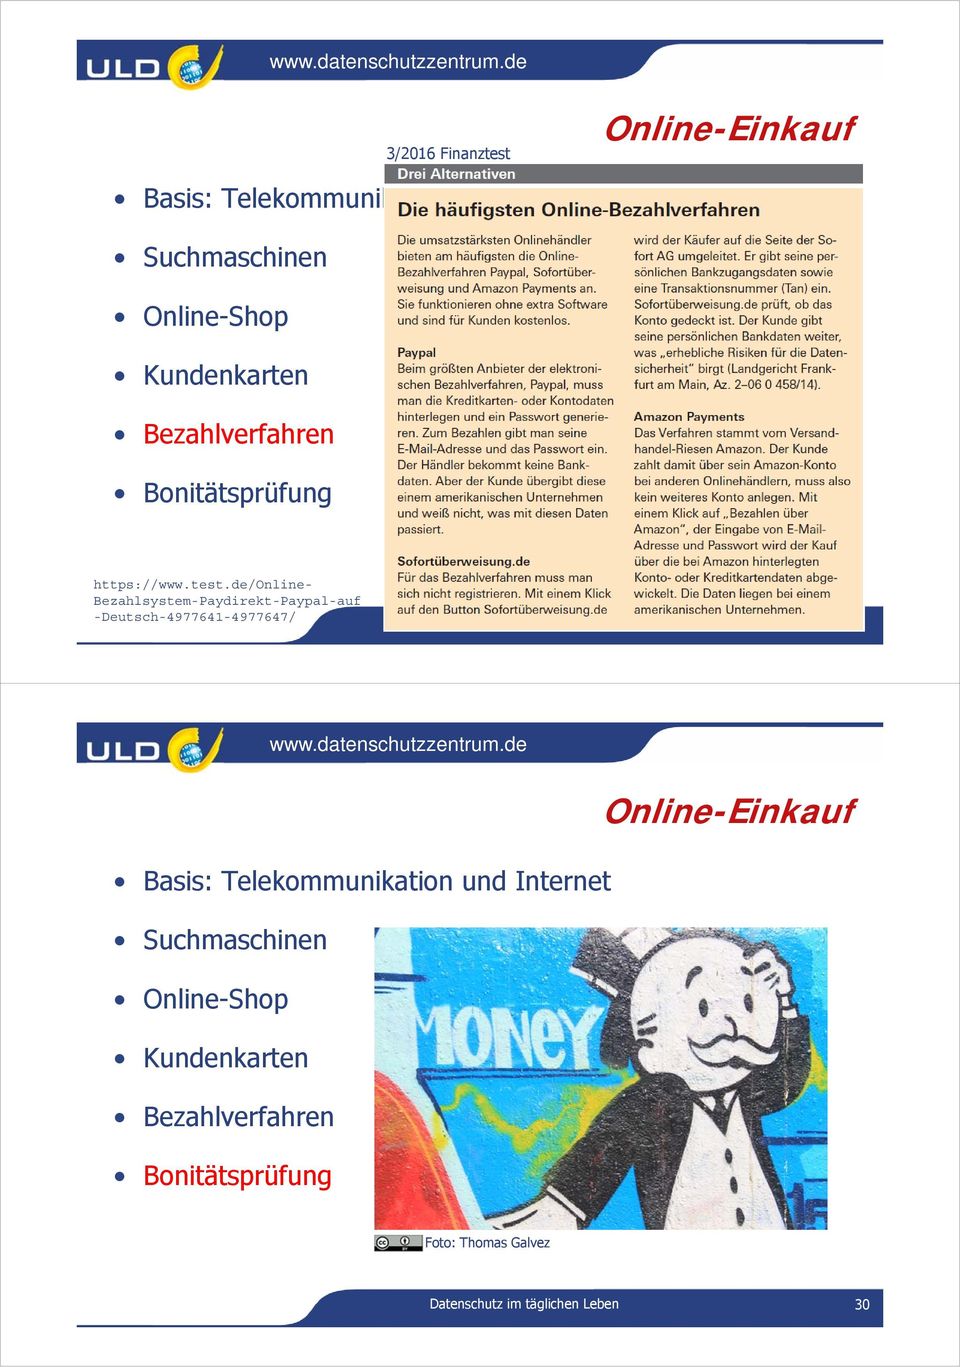 de/online- Bezahlsystem-Paydirekt-Paypal-auf -Deutsch-4977641-4977647/ Basis: